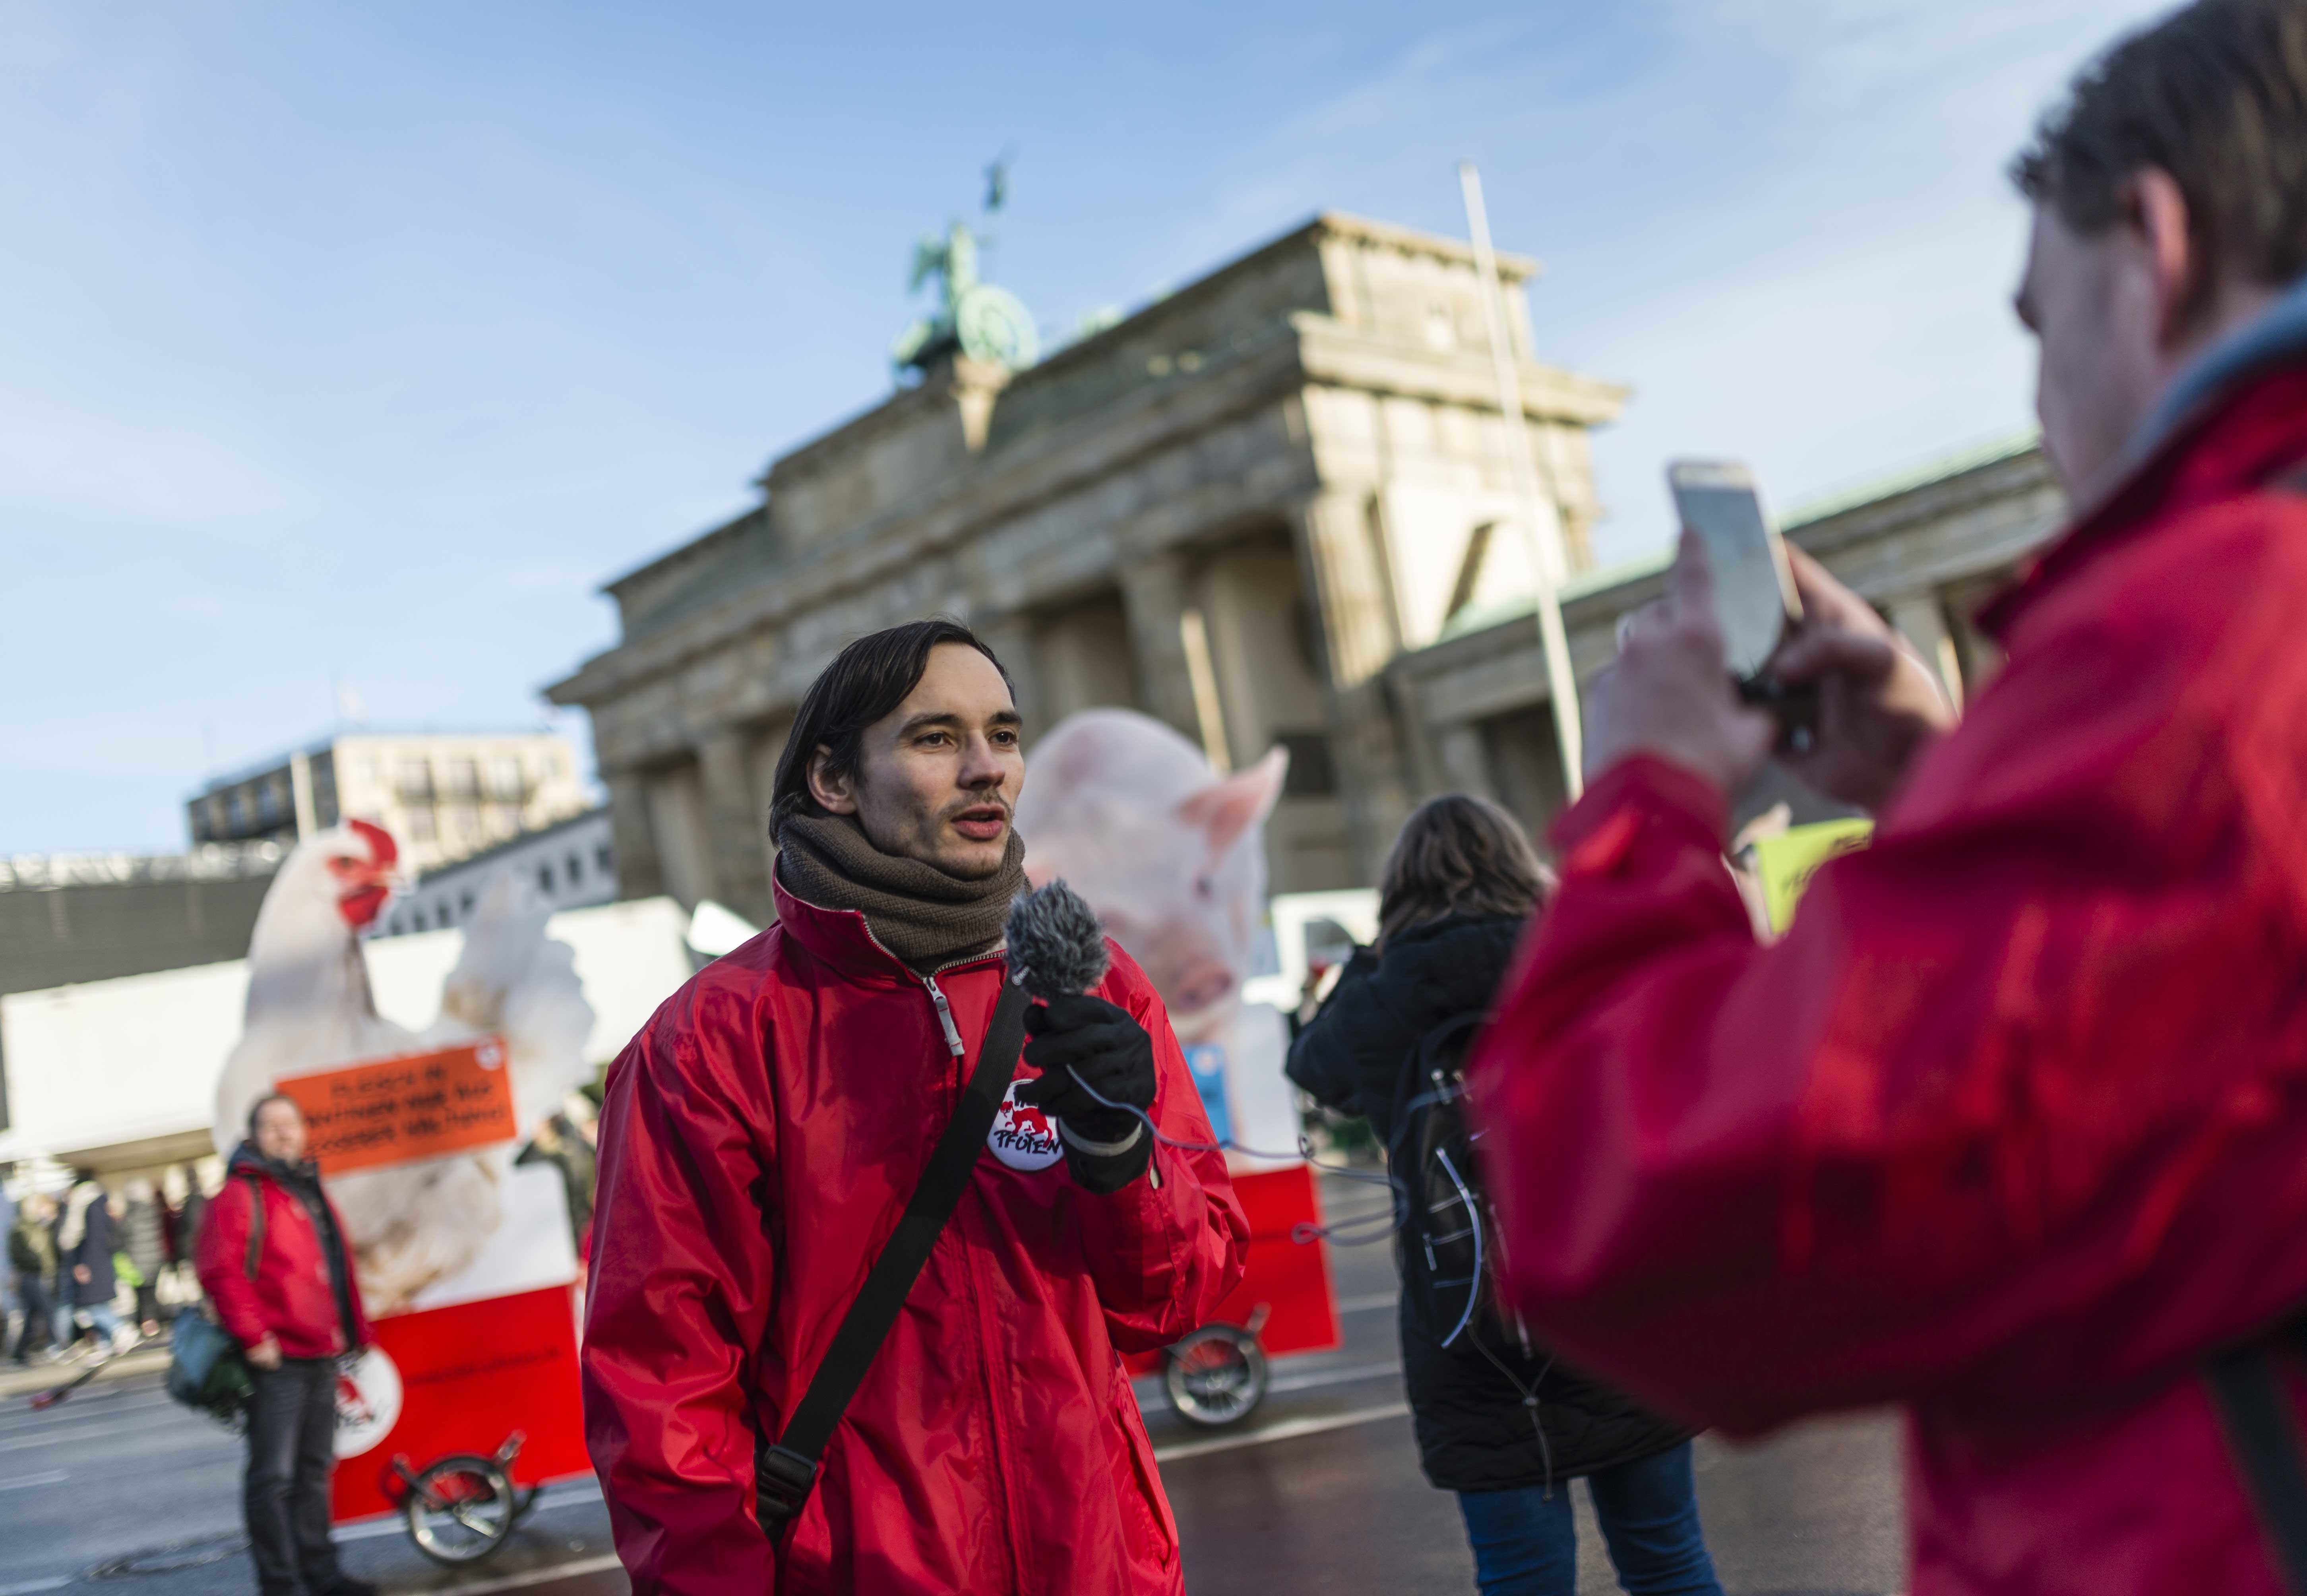 VIER PFOTEN auf der Wir haben es satt Demo im Januar 2020 in Berlin